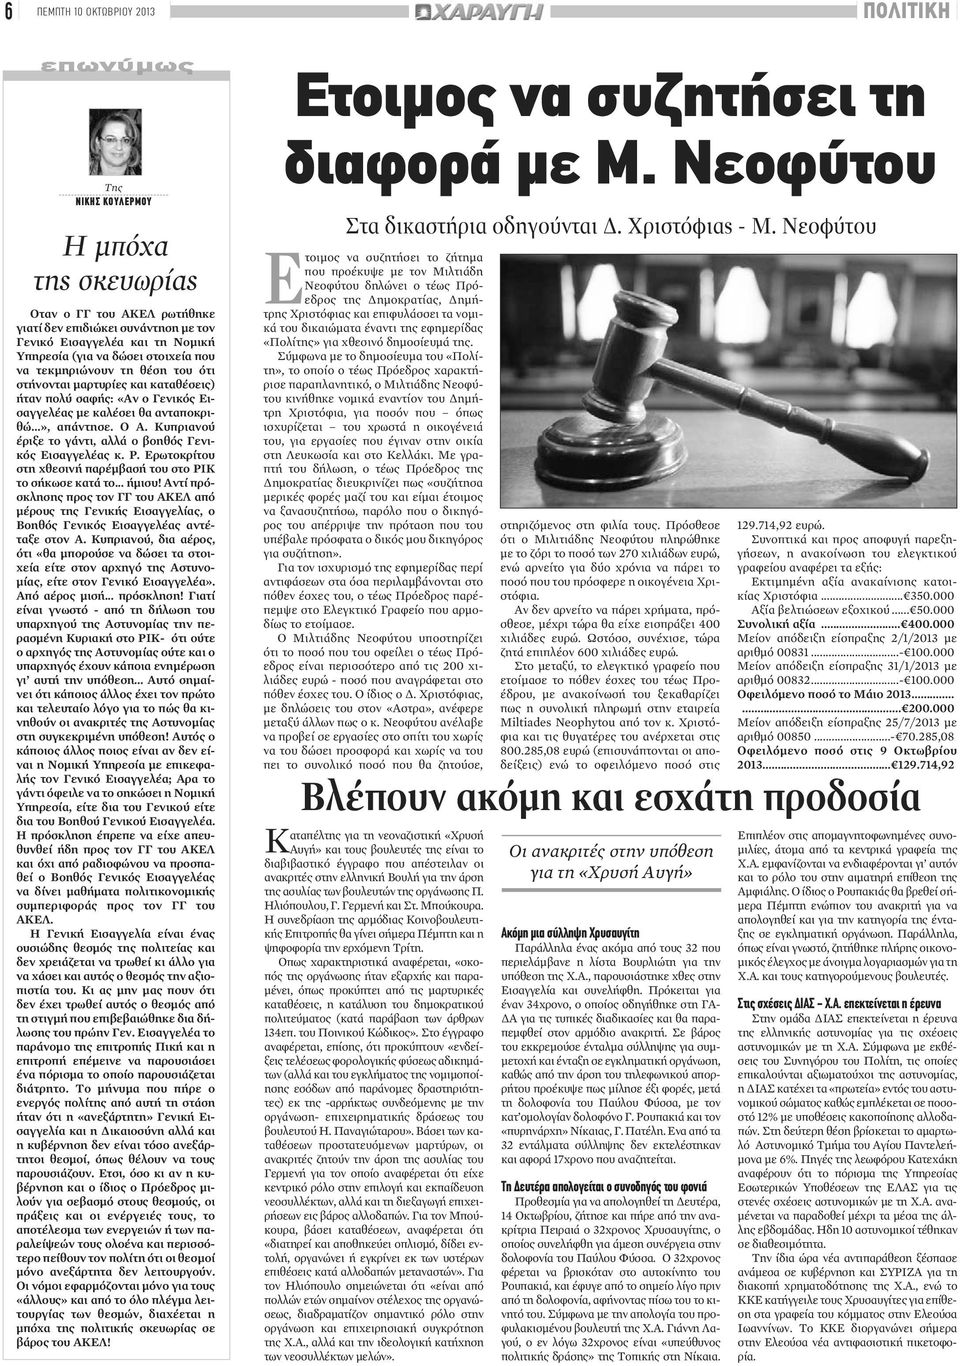 Κυπριανού έριξε το γάντι, αλλά ο βοηθός Γενικός Εισαγγελέας κ. Ρ. Ερωτοκρίτου στη χθεσινή παρέμβασή του στο ΡΙΚ το σήκωσε κατά το... ήμισυ!